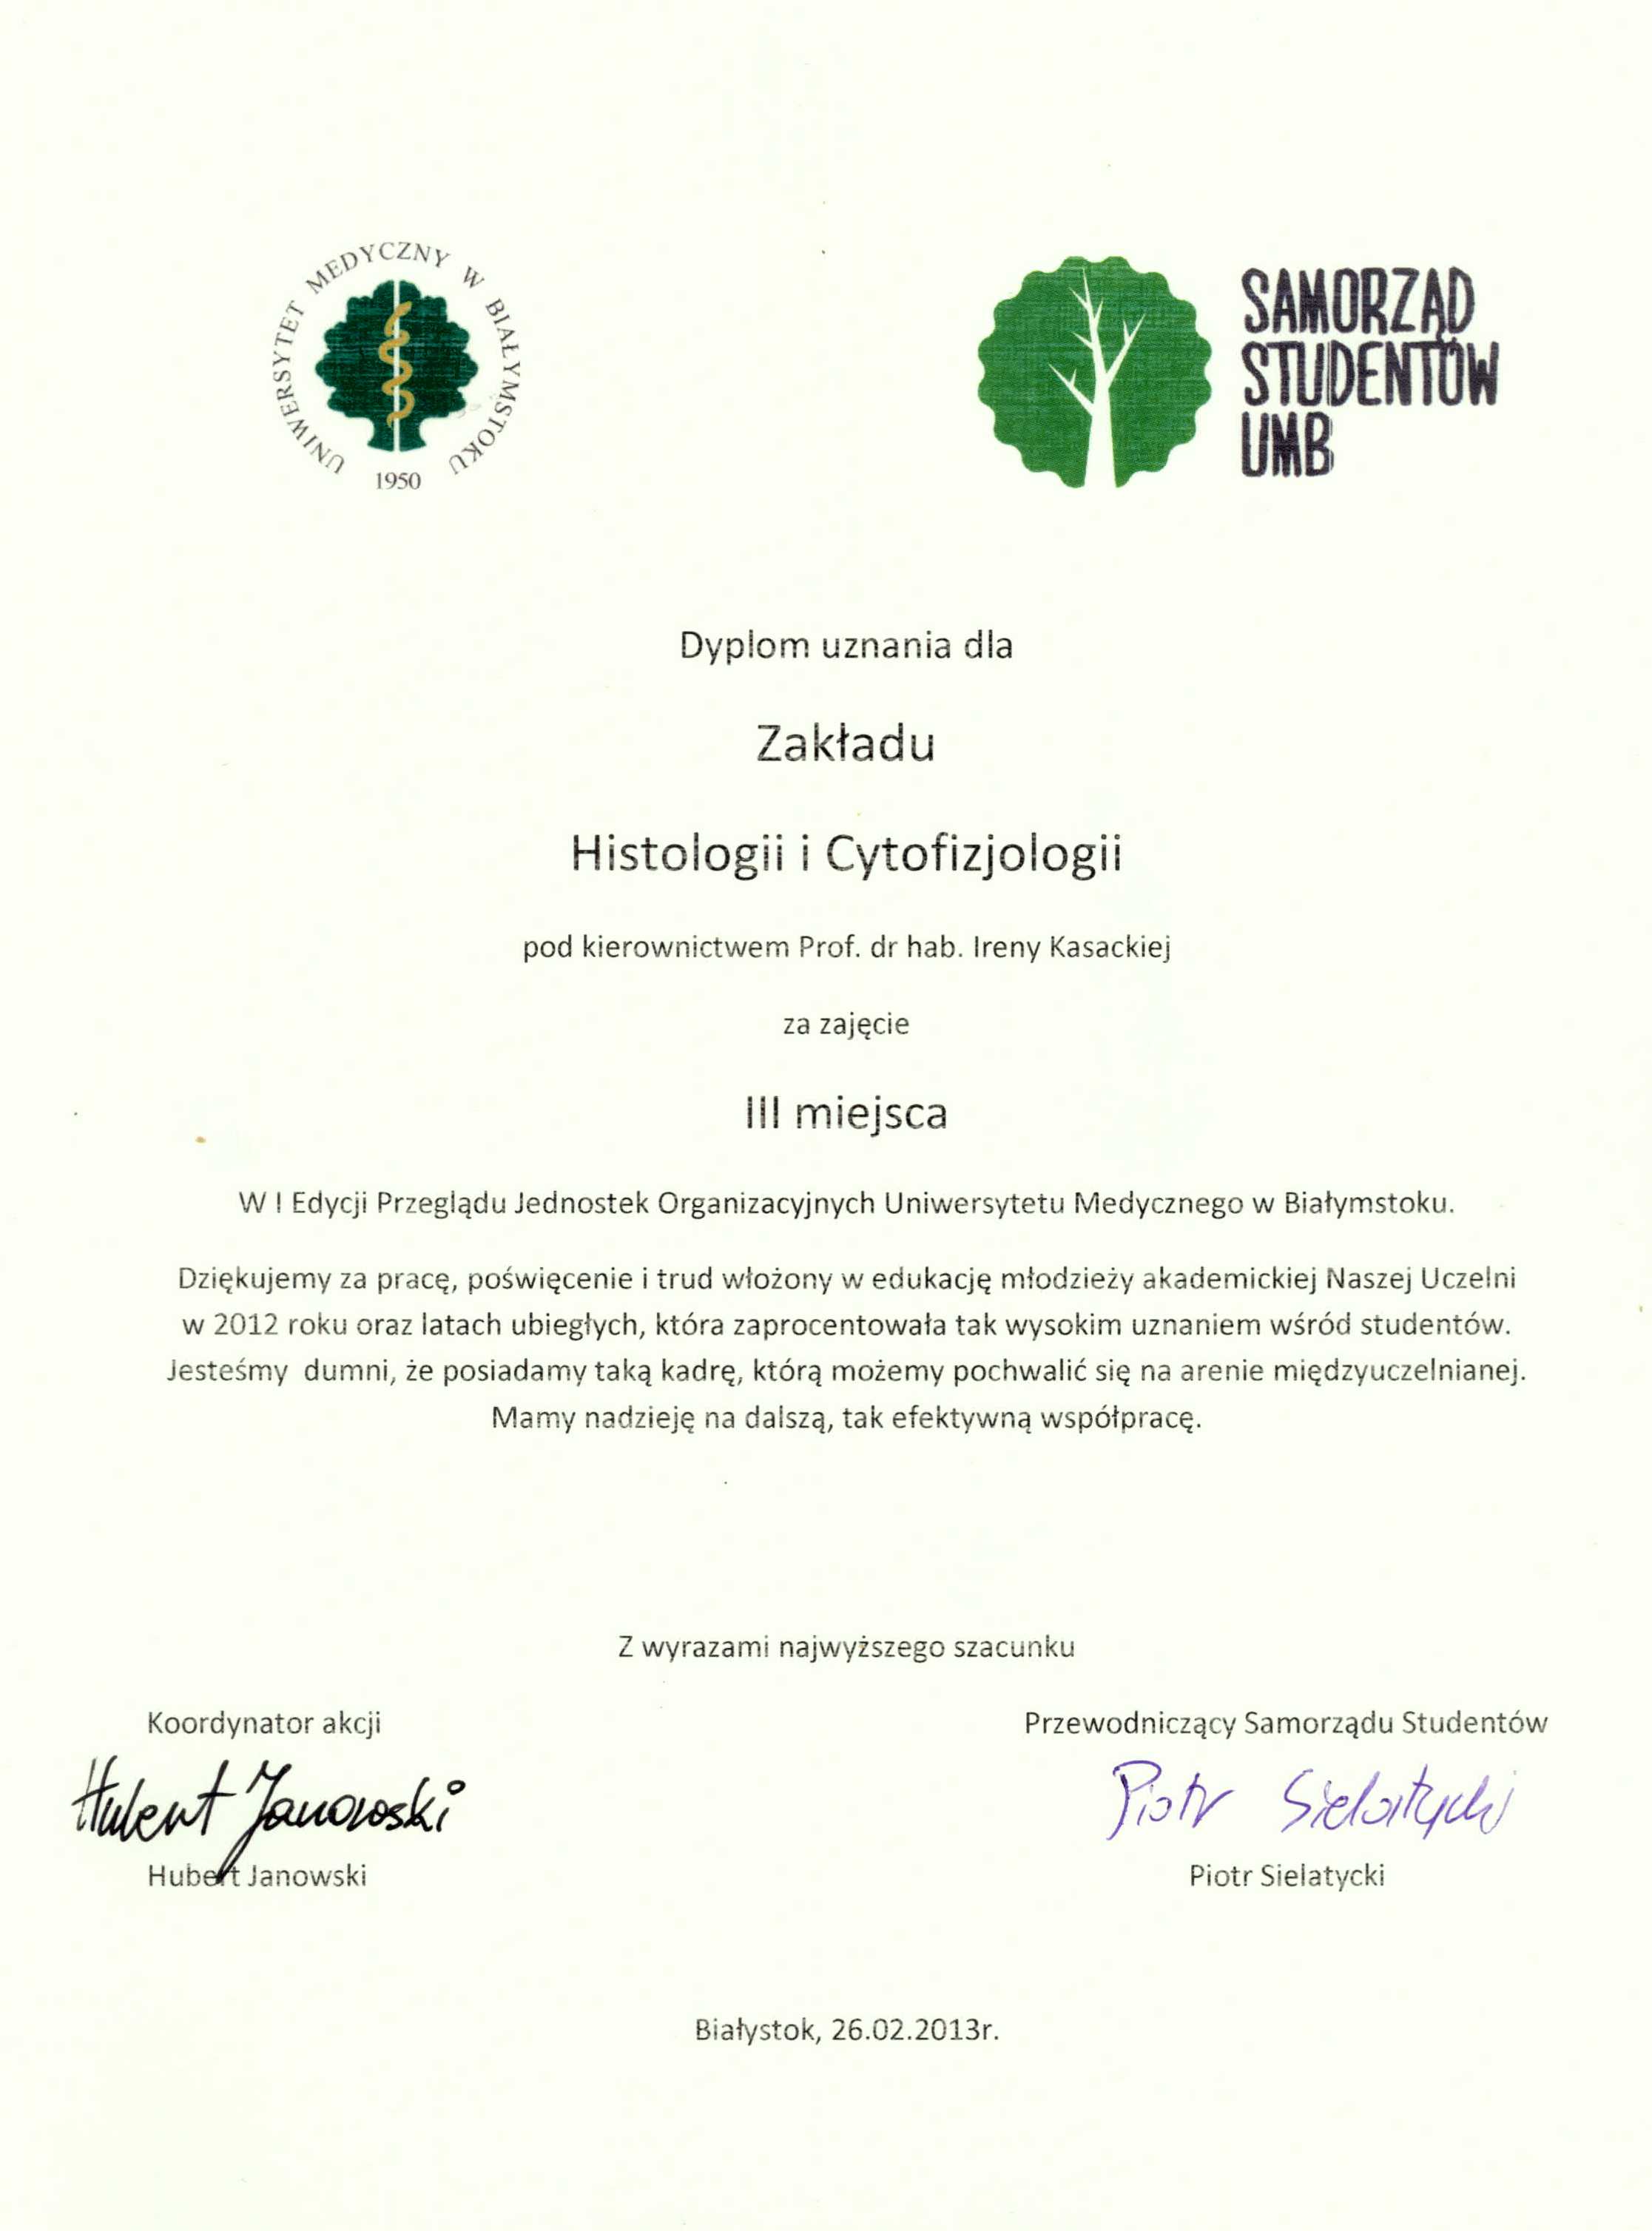 Dyplom uznania dla Zakładu Histologii i Cytofizjologii za zajęcie III miejsca w I Edycji Przeglądu Jednostek Organizacyjnych UMB. 26.02.2013